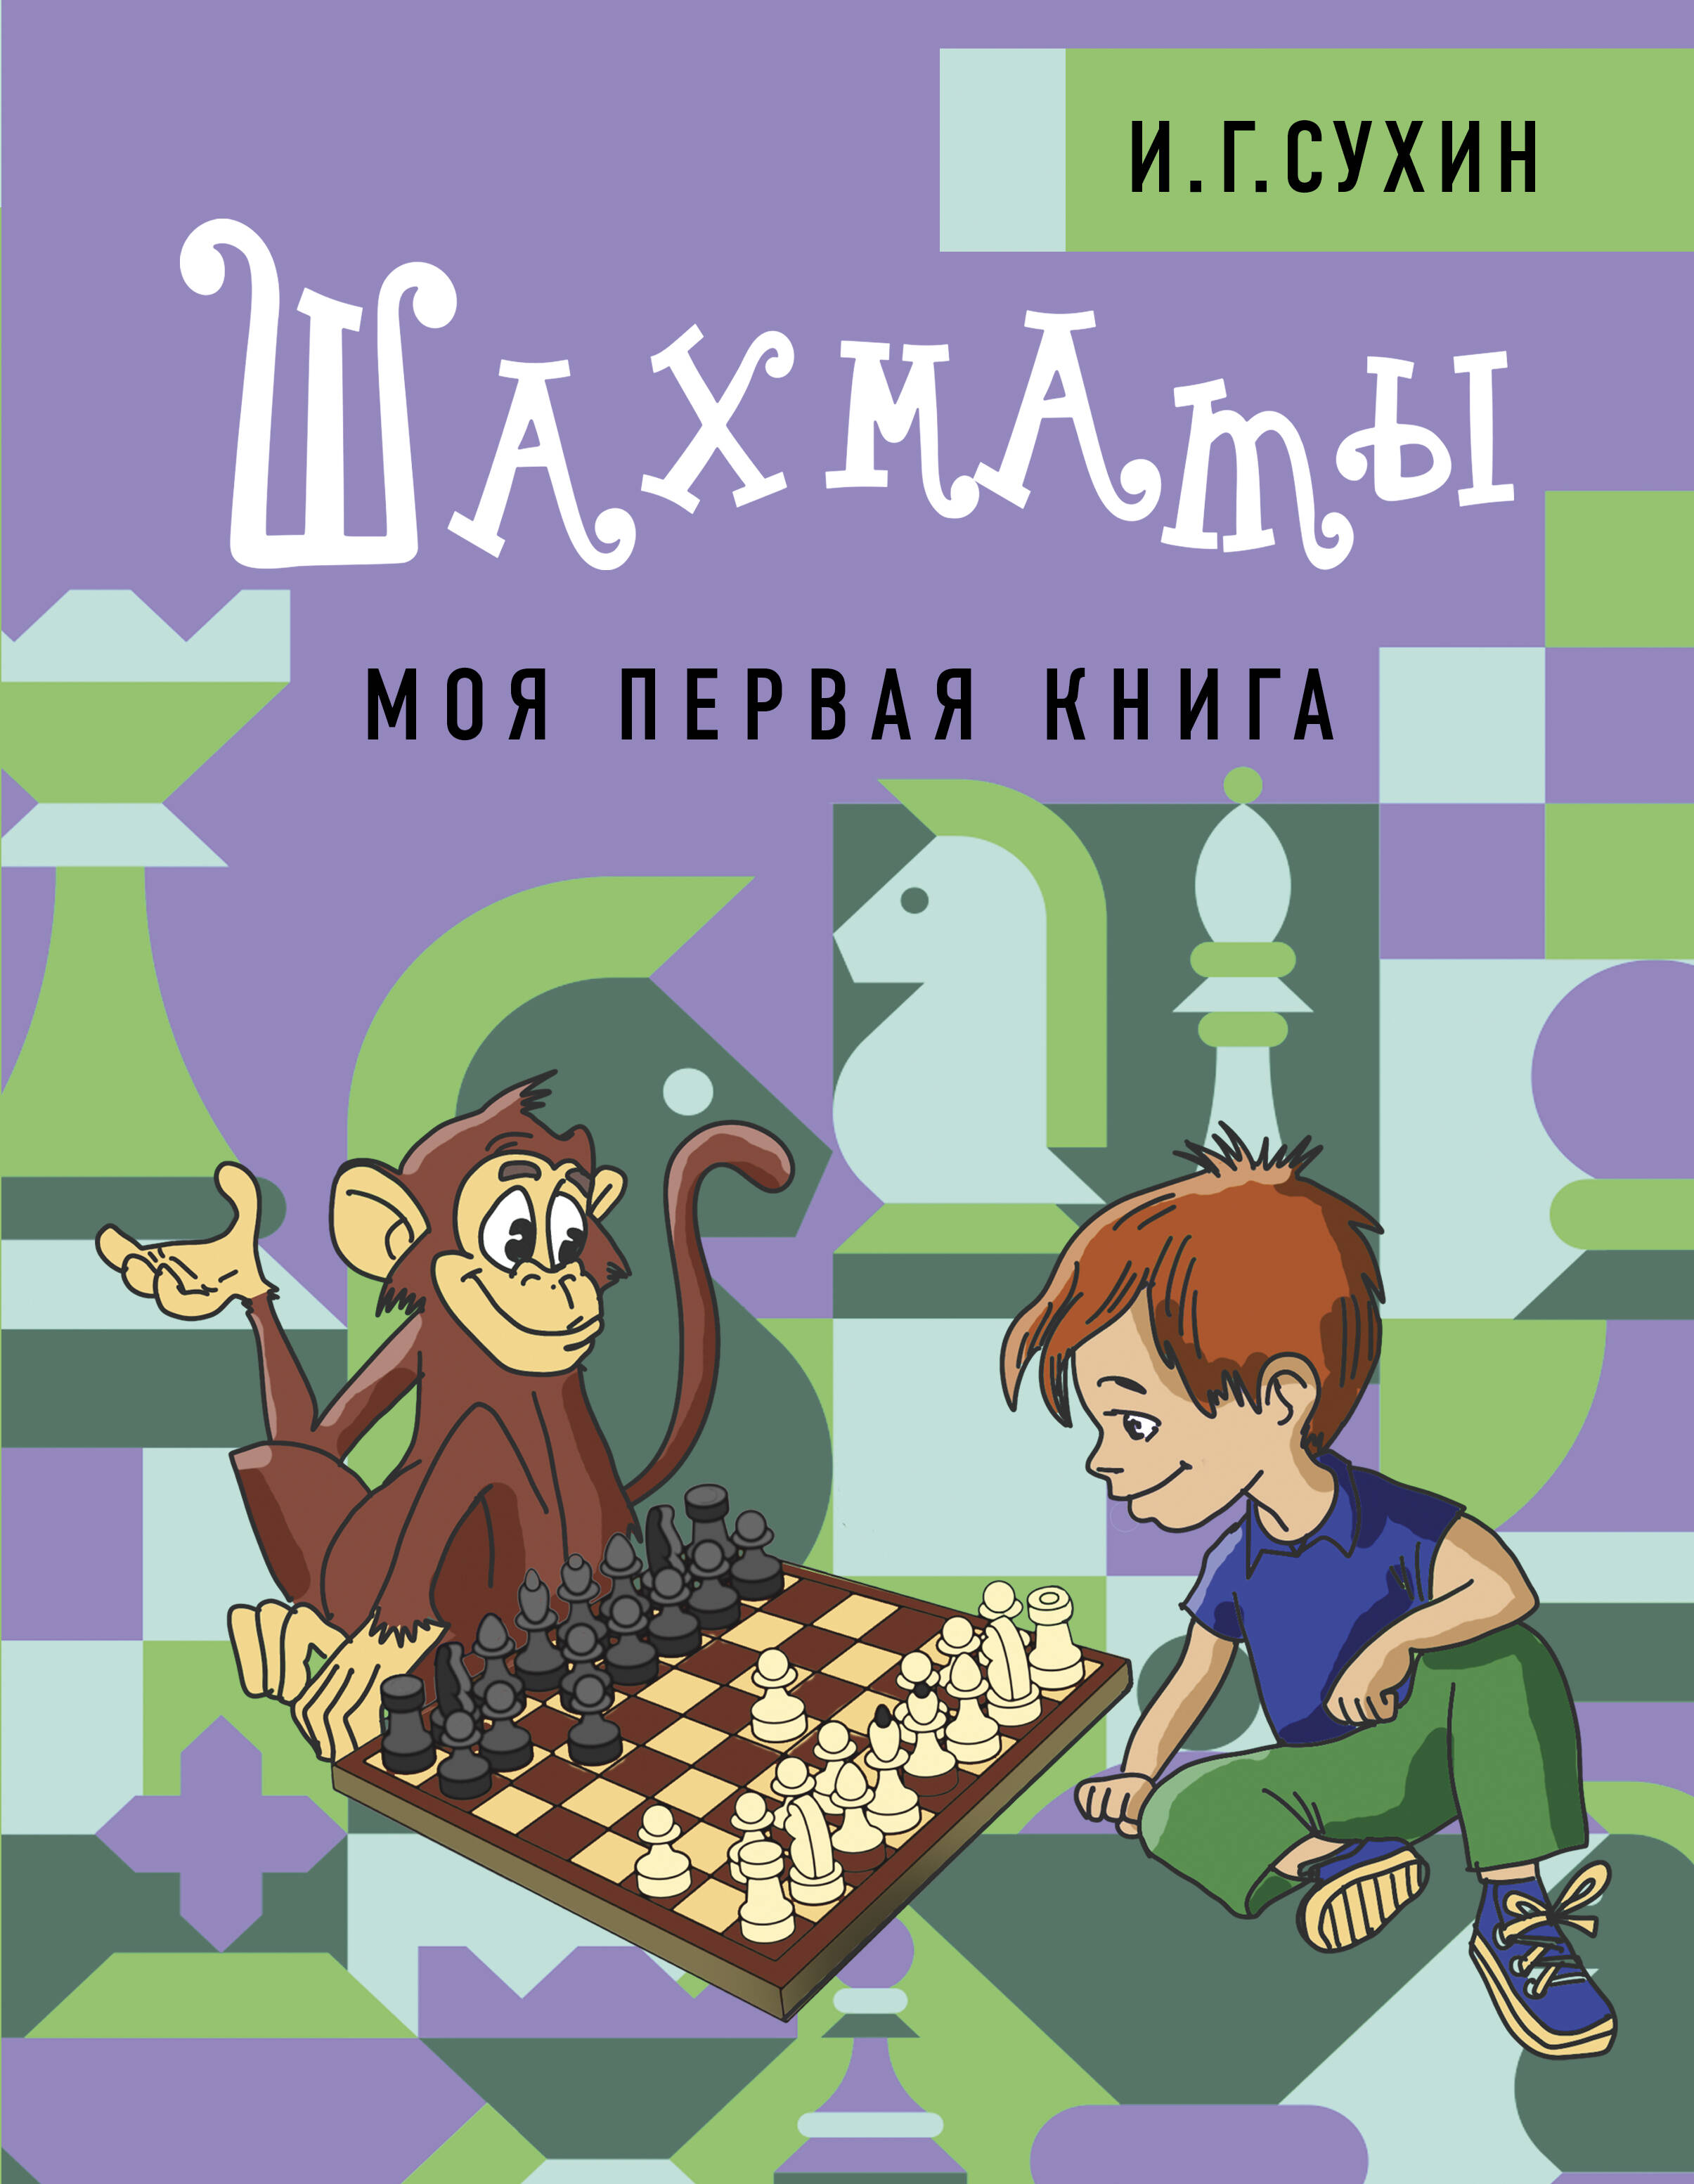 Шахматы. Моя первая книга сухин игорь георгиевич шахматы для детей